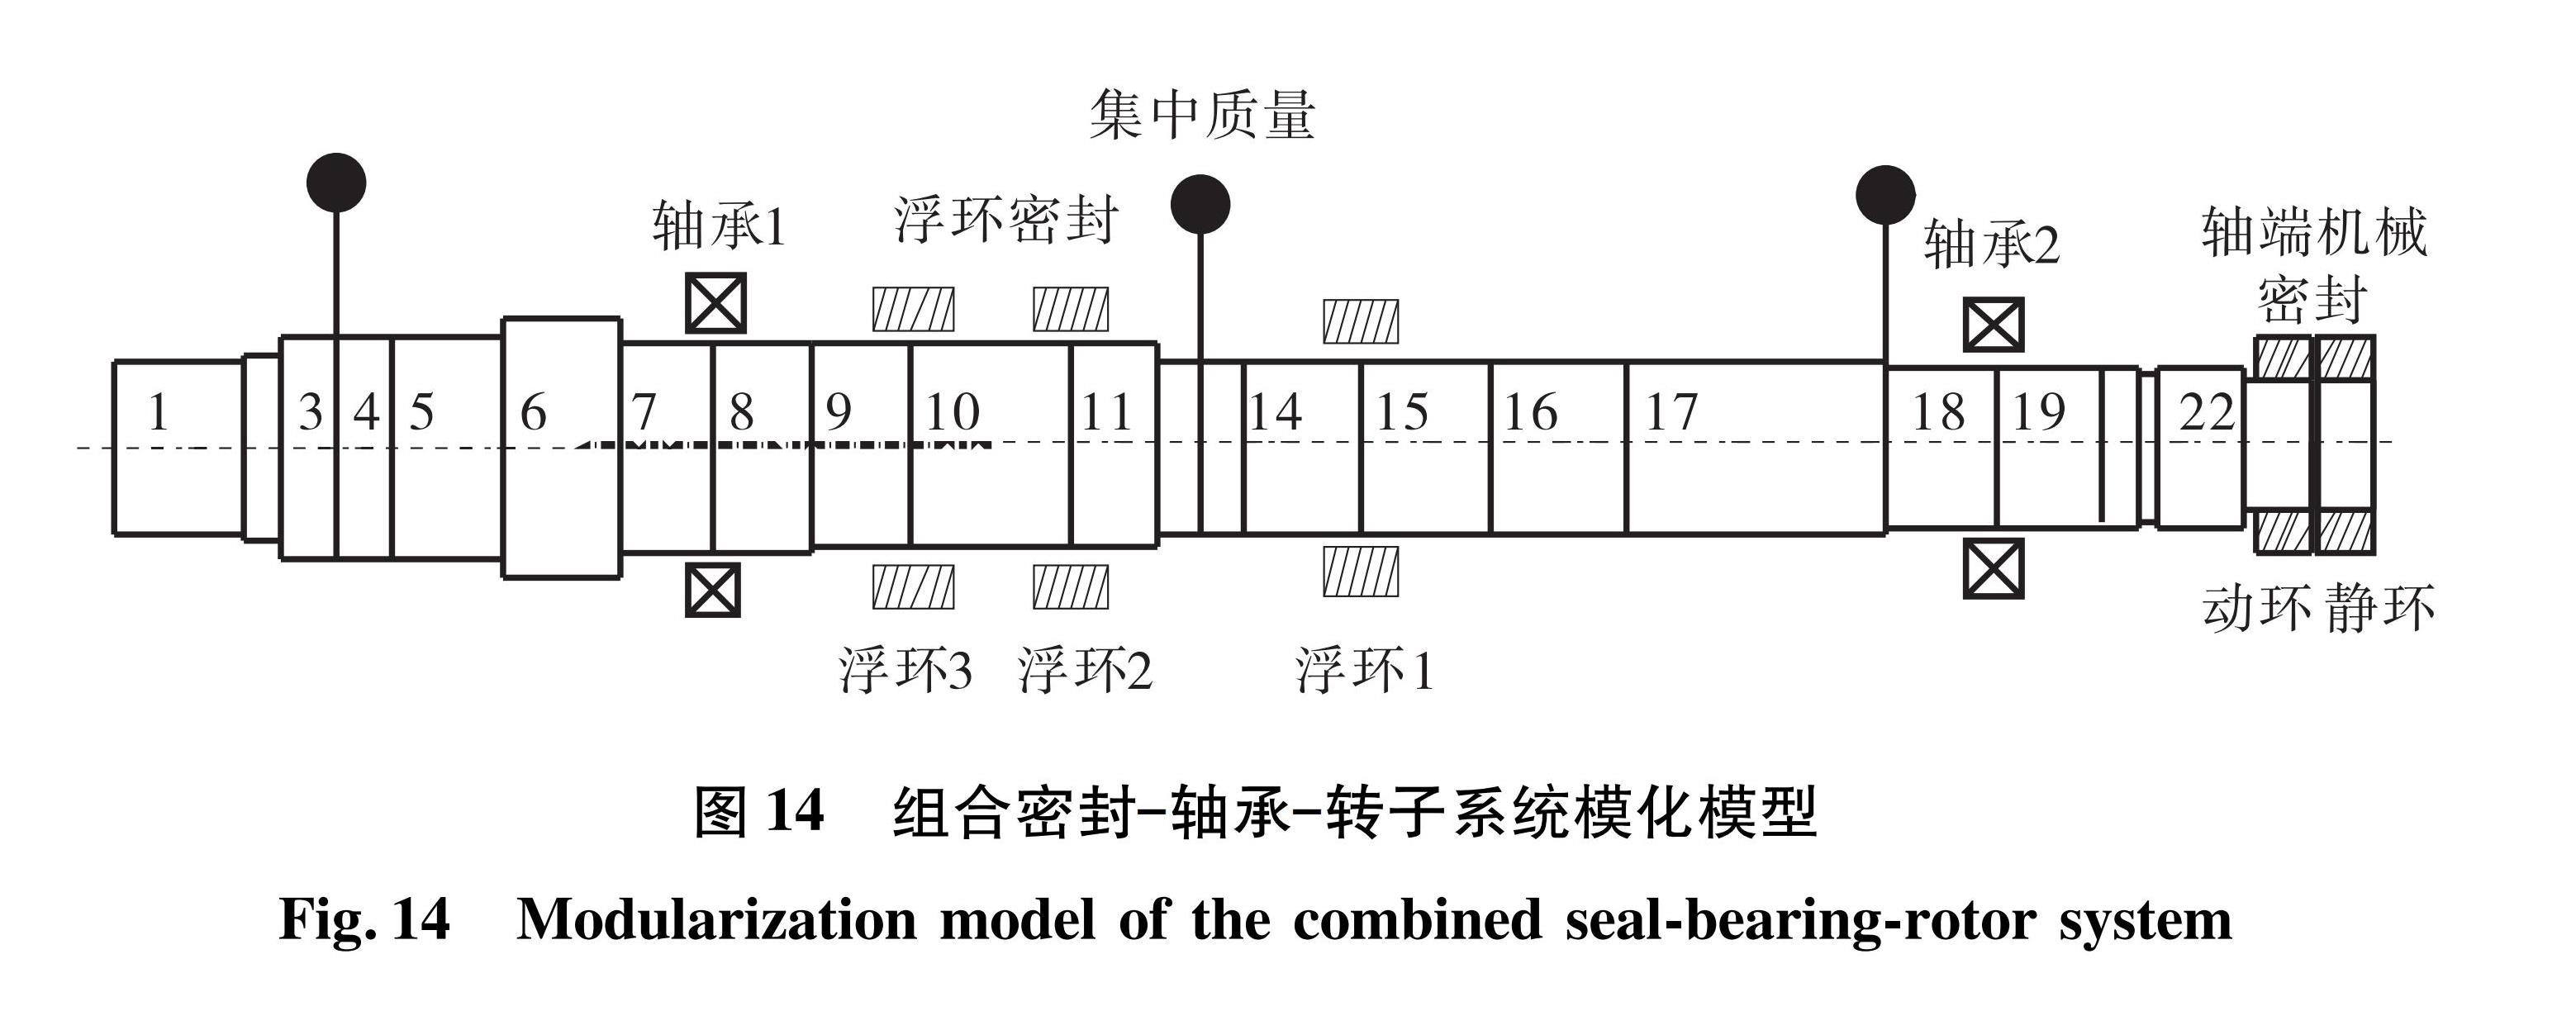 图14 组合密封—轴承—转子系统模化模型<br/>Fig.14 Modularization model of the combined seal-bearing-rotor system